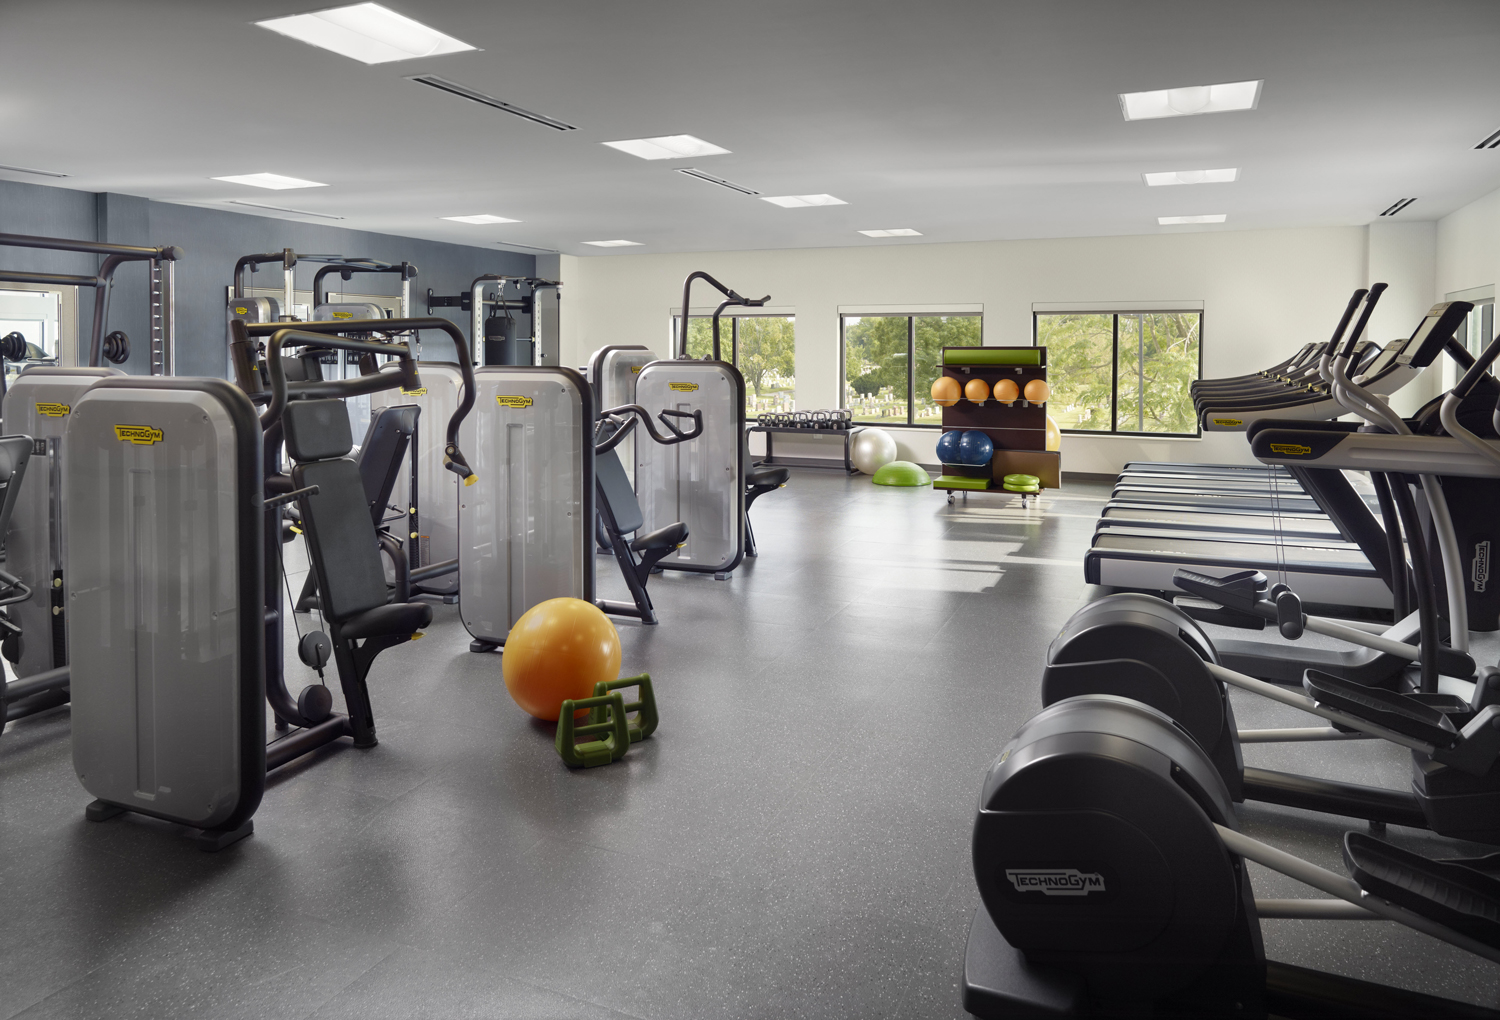 residence-inn-fitness-center.jpg